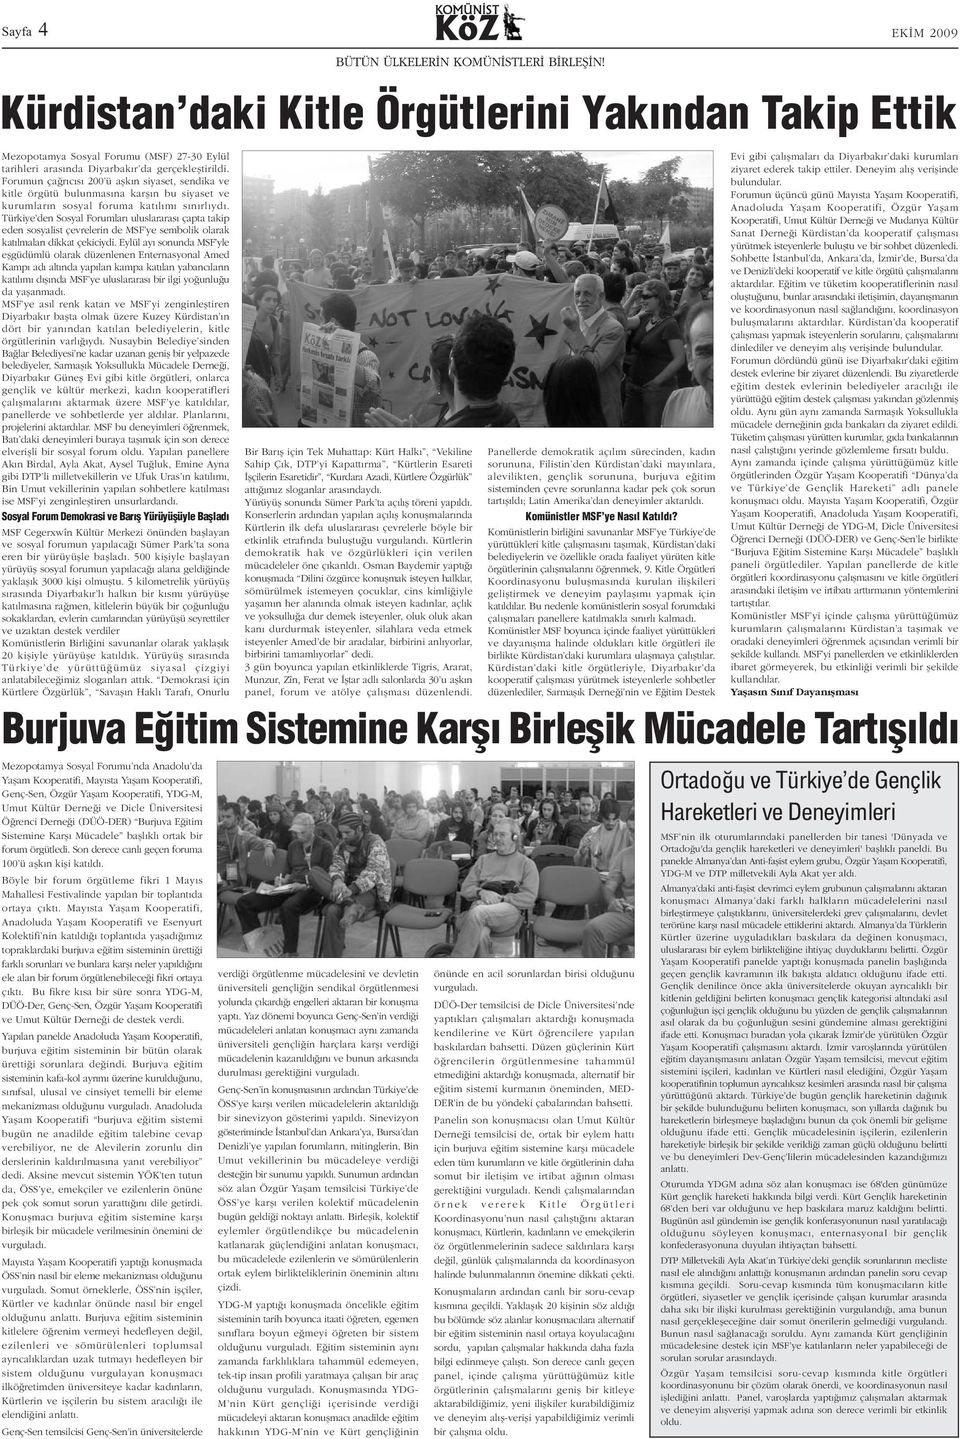 Türkiye den Sosyal Forumlarý uluslararasý çapta takip eden sosyalist çevrelerin de MSF ye sembolik olarak katýlmalarý dikkat çekiciydi.